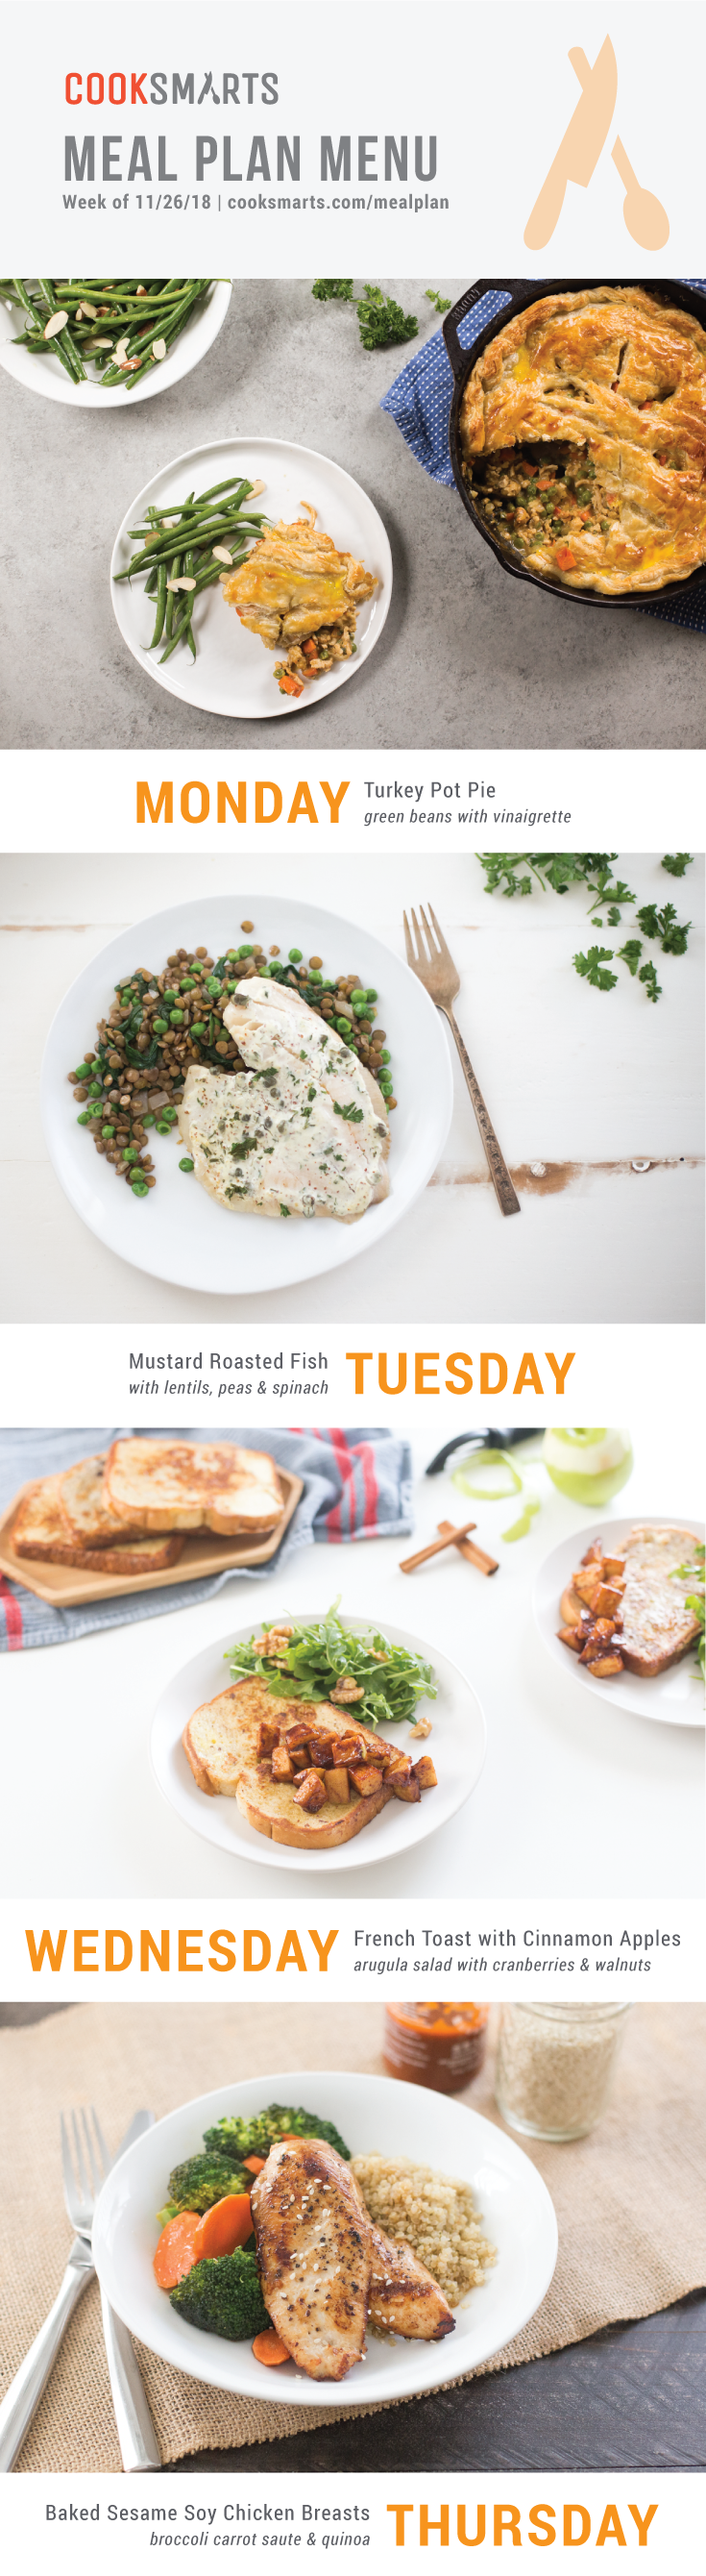 Weekly Meal Planner | Menu for Week of 11/26/18 via Cook Smarts